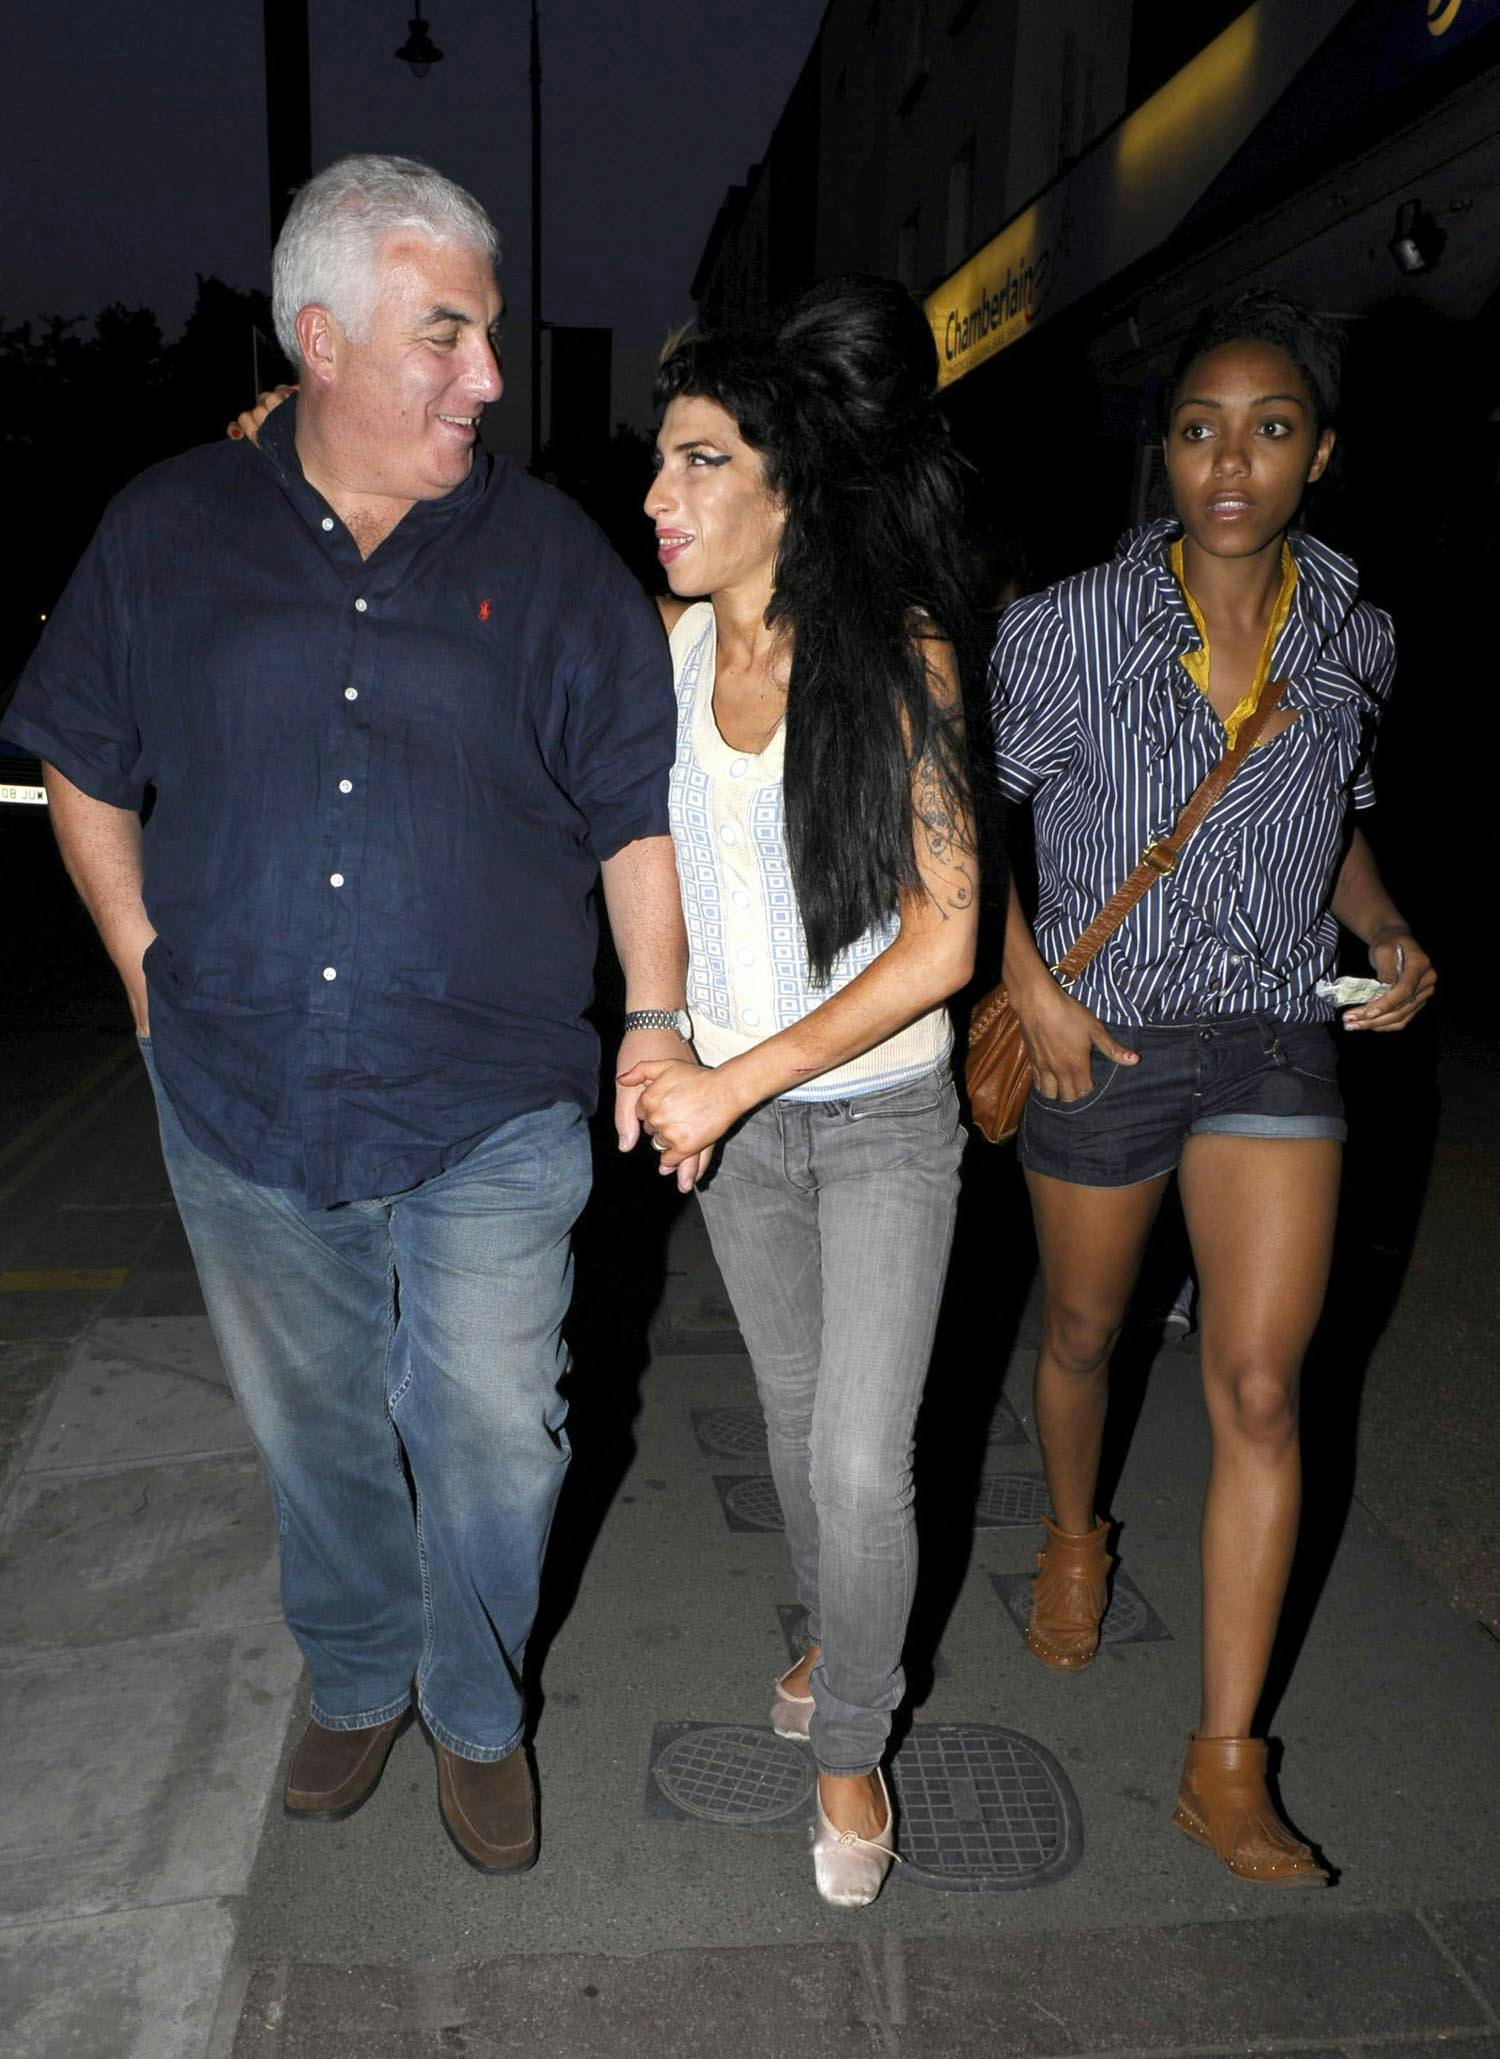 Amy Winehouse med sin far Mitch. Efter sangerindens død blev han portrætteret i dokumentaren "Amy" fra 2015. Selv fortalte han siden, at filmen satte ham i det værst tænkelige lys. Han medvirkede sidste år i "Reclaiming Amy" på BBC, da 10-året for he